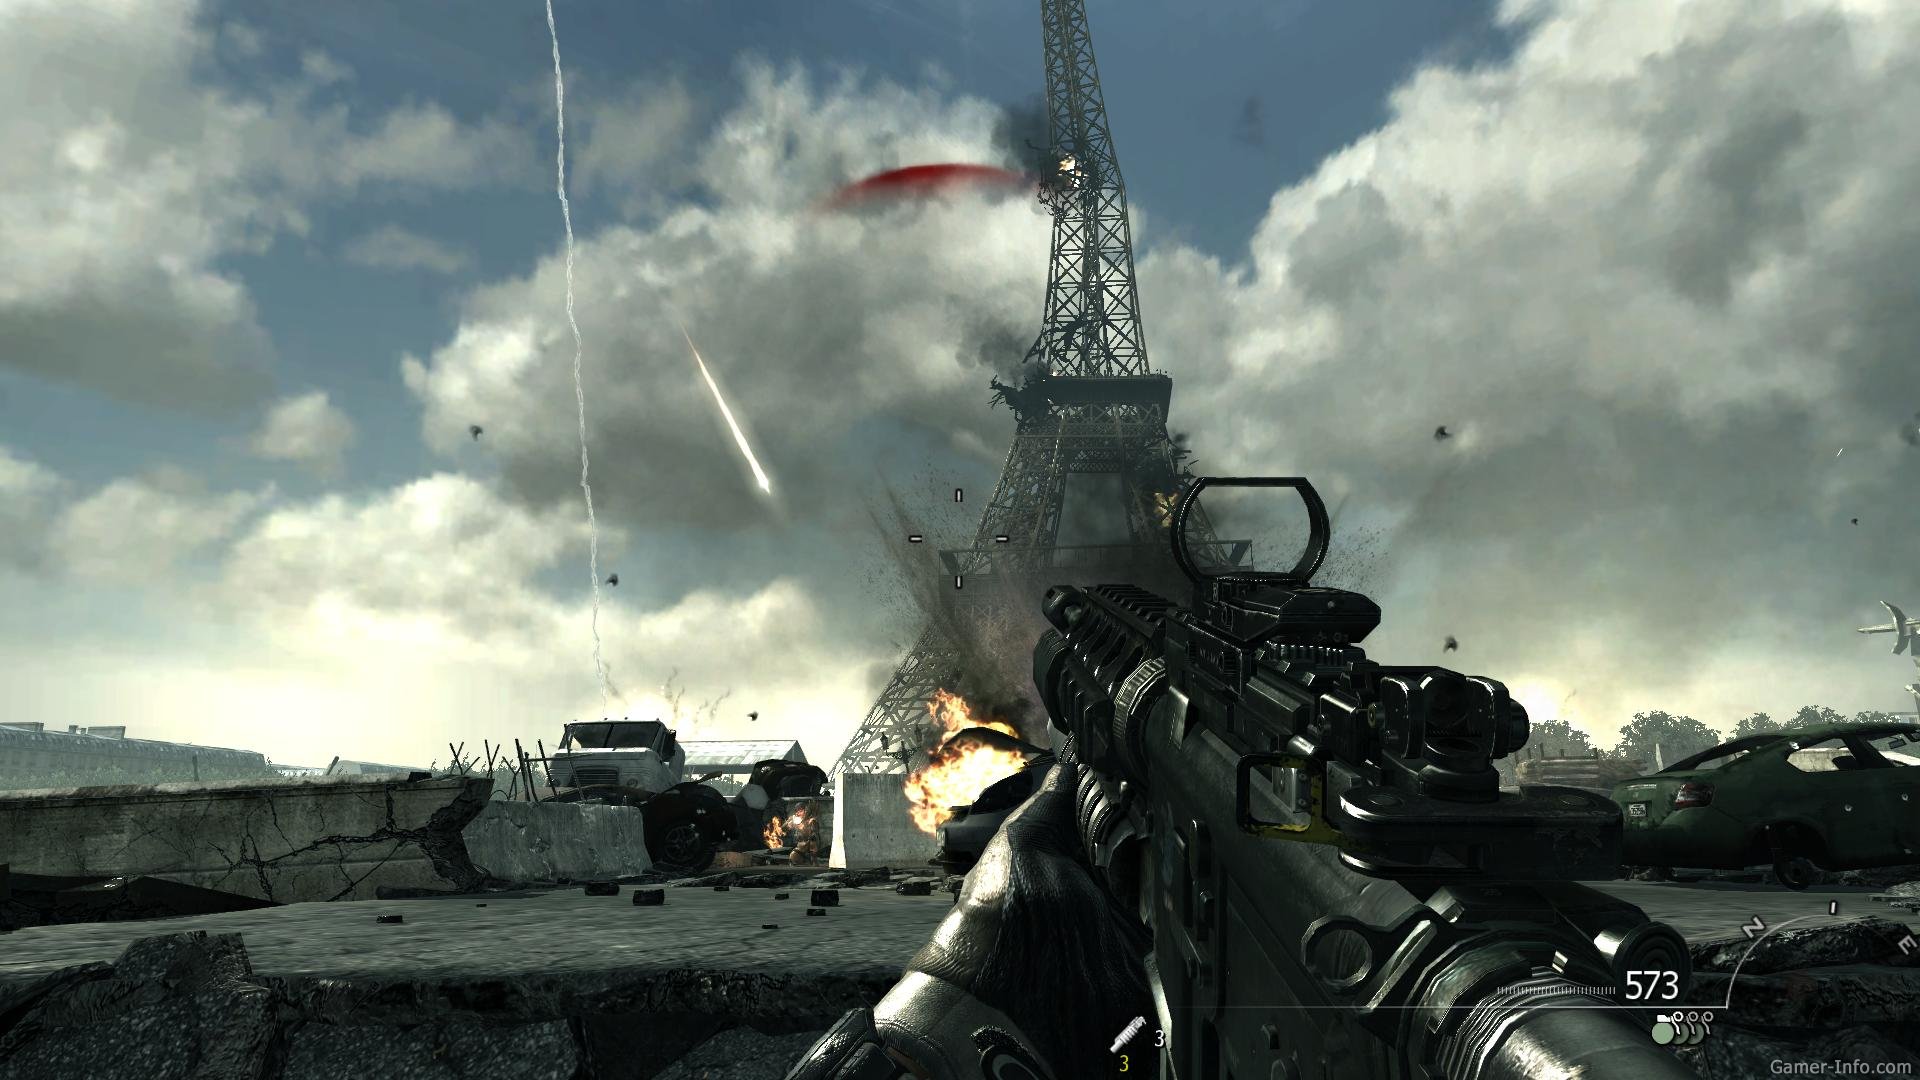 Call of duty 4 3. Call of Duty 4 Modern Warfare. Call of Duty mw5. Call of Duty 4 Modern Warfare 3. Call of Duty Modern Warfare 5.